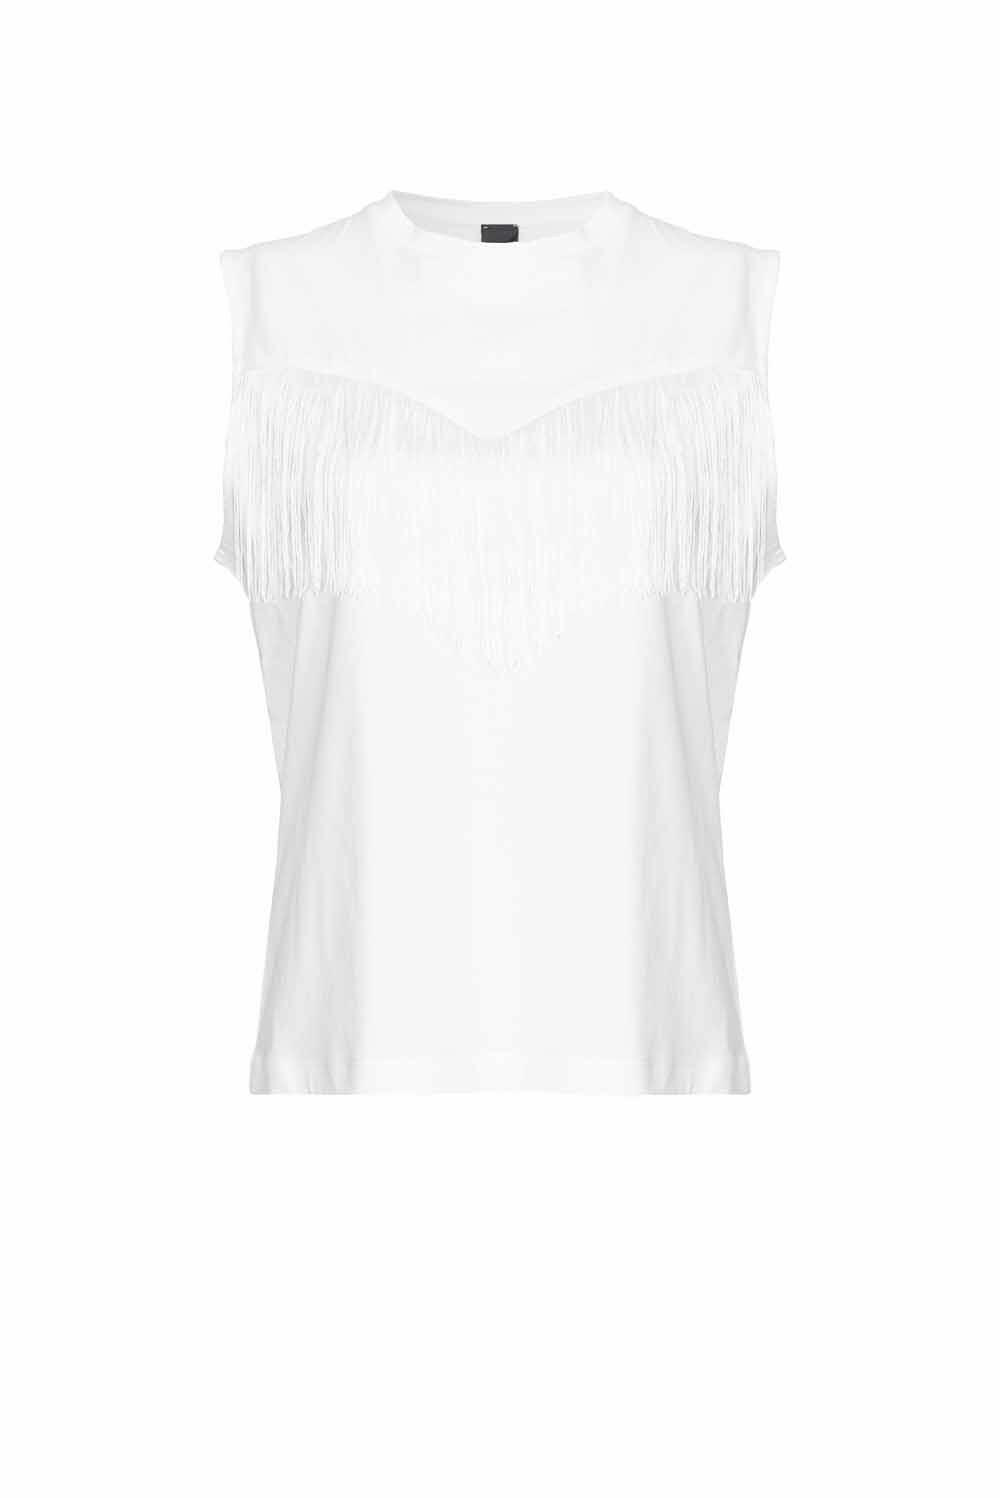  Pinko T-shirt Smanicata Bianco Donna - 1